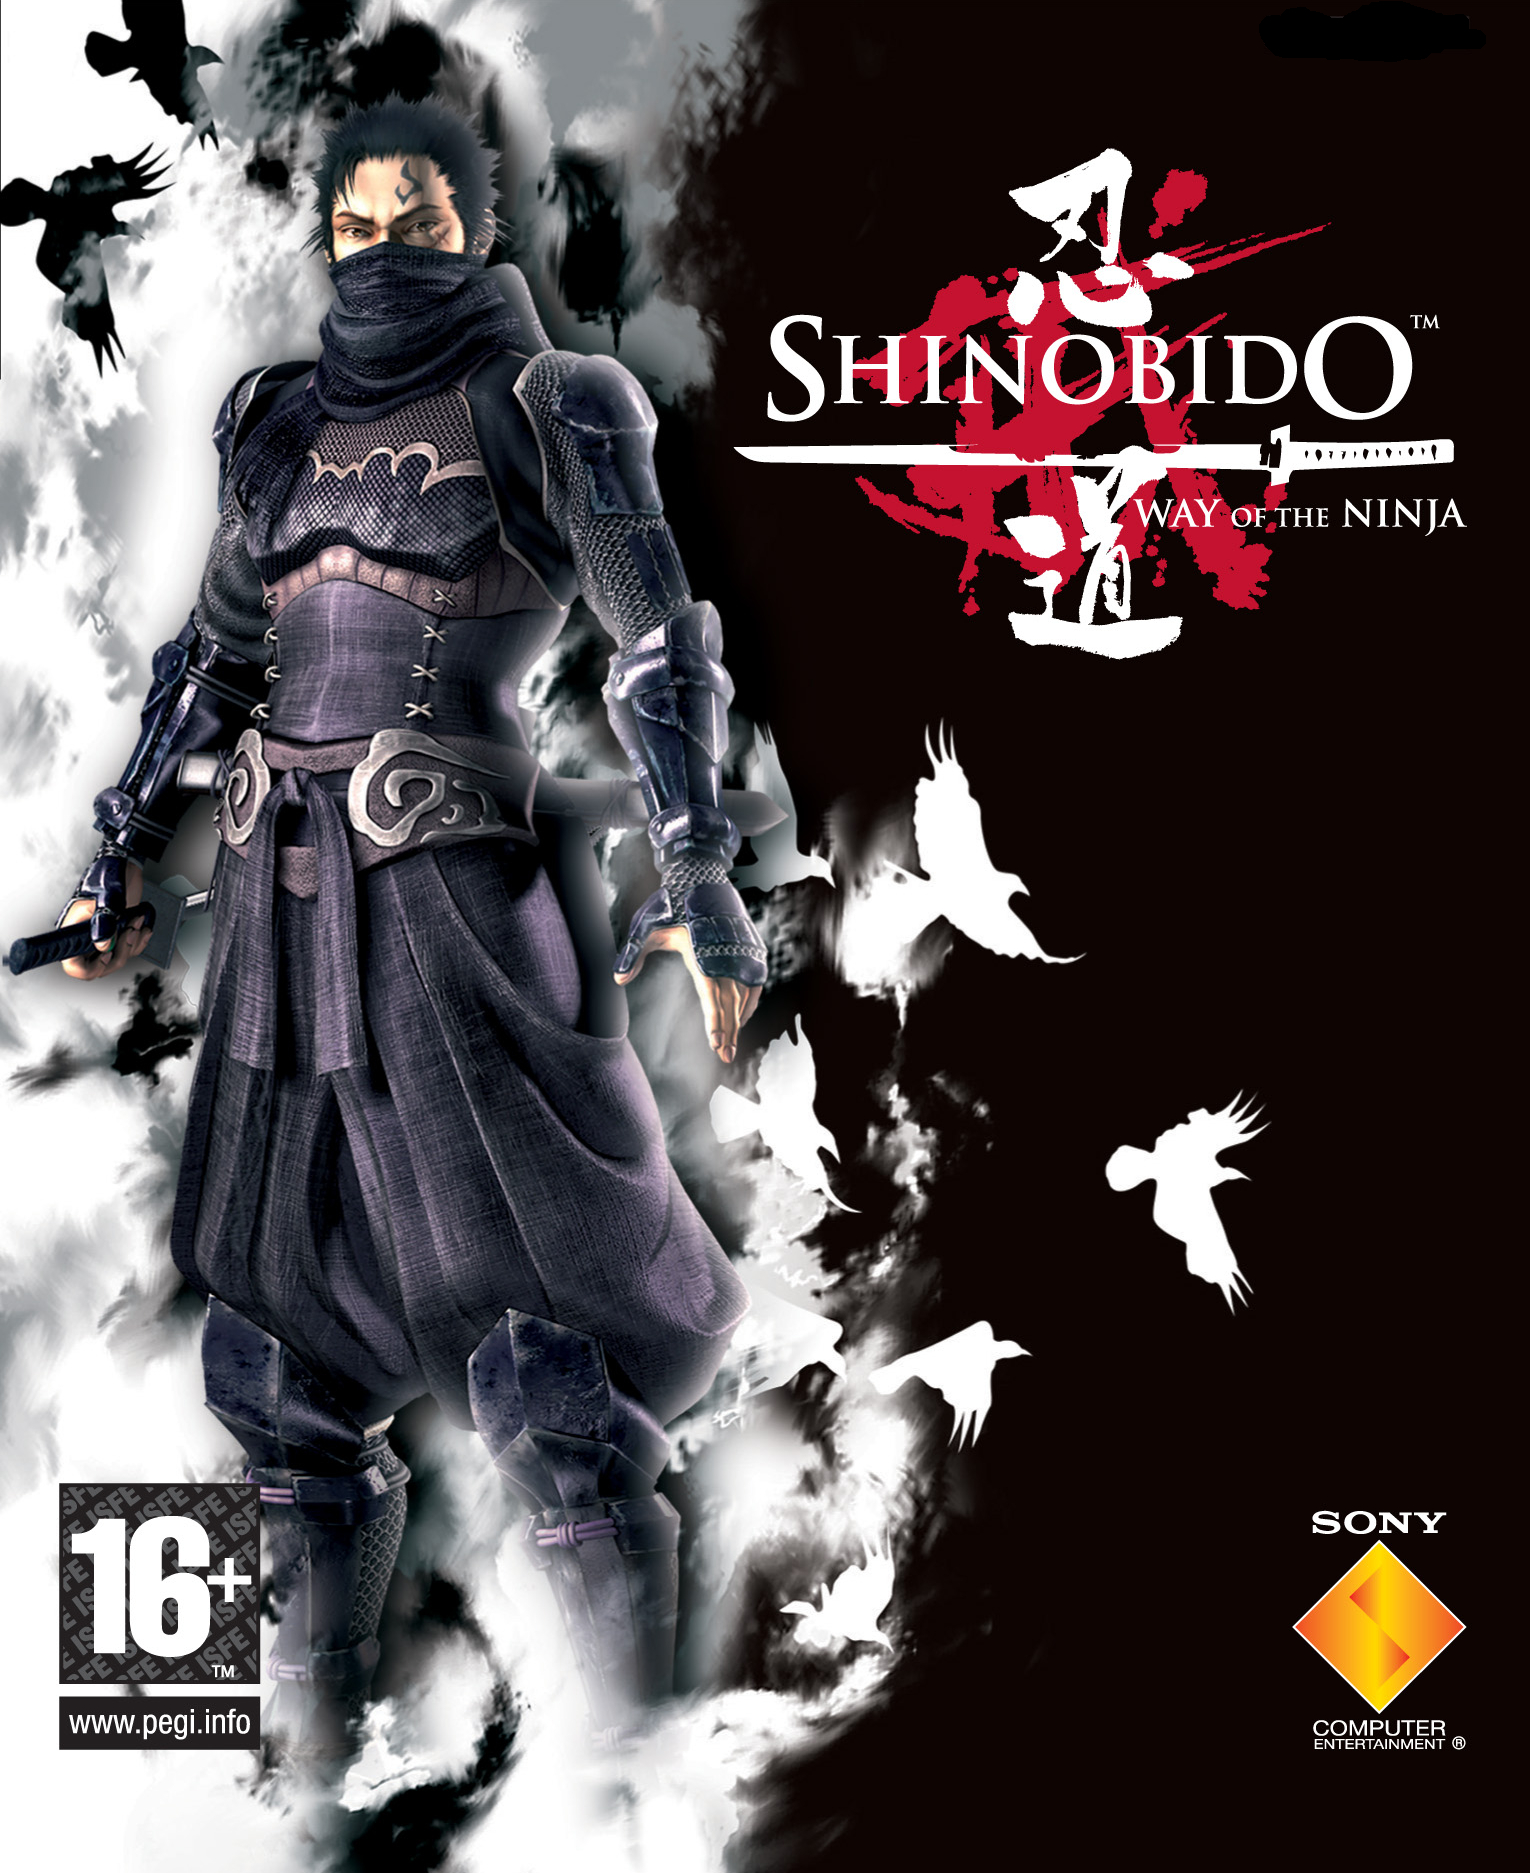 Shinobido: Way of the Ninja | Shinobido Wiki | Fandom